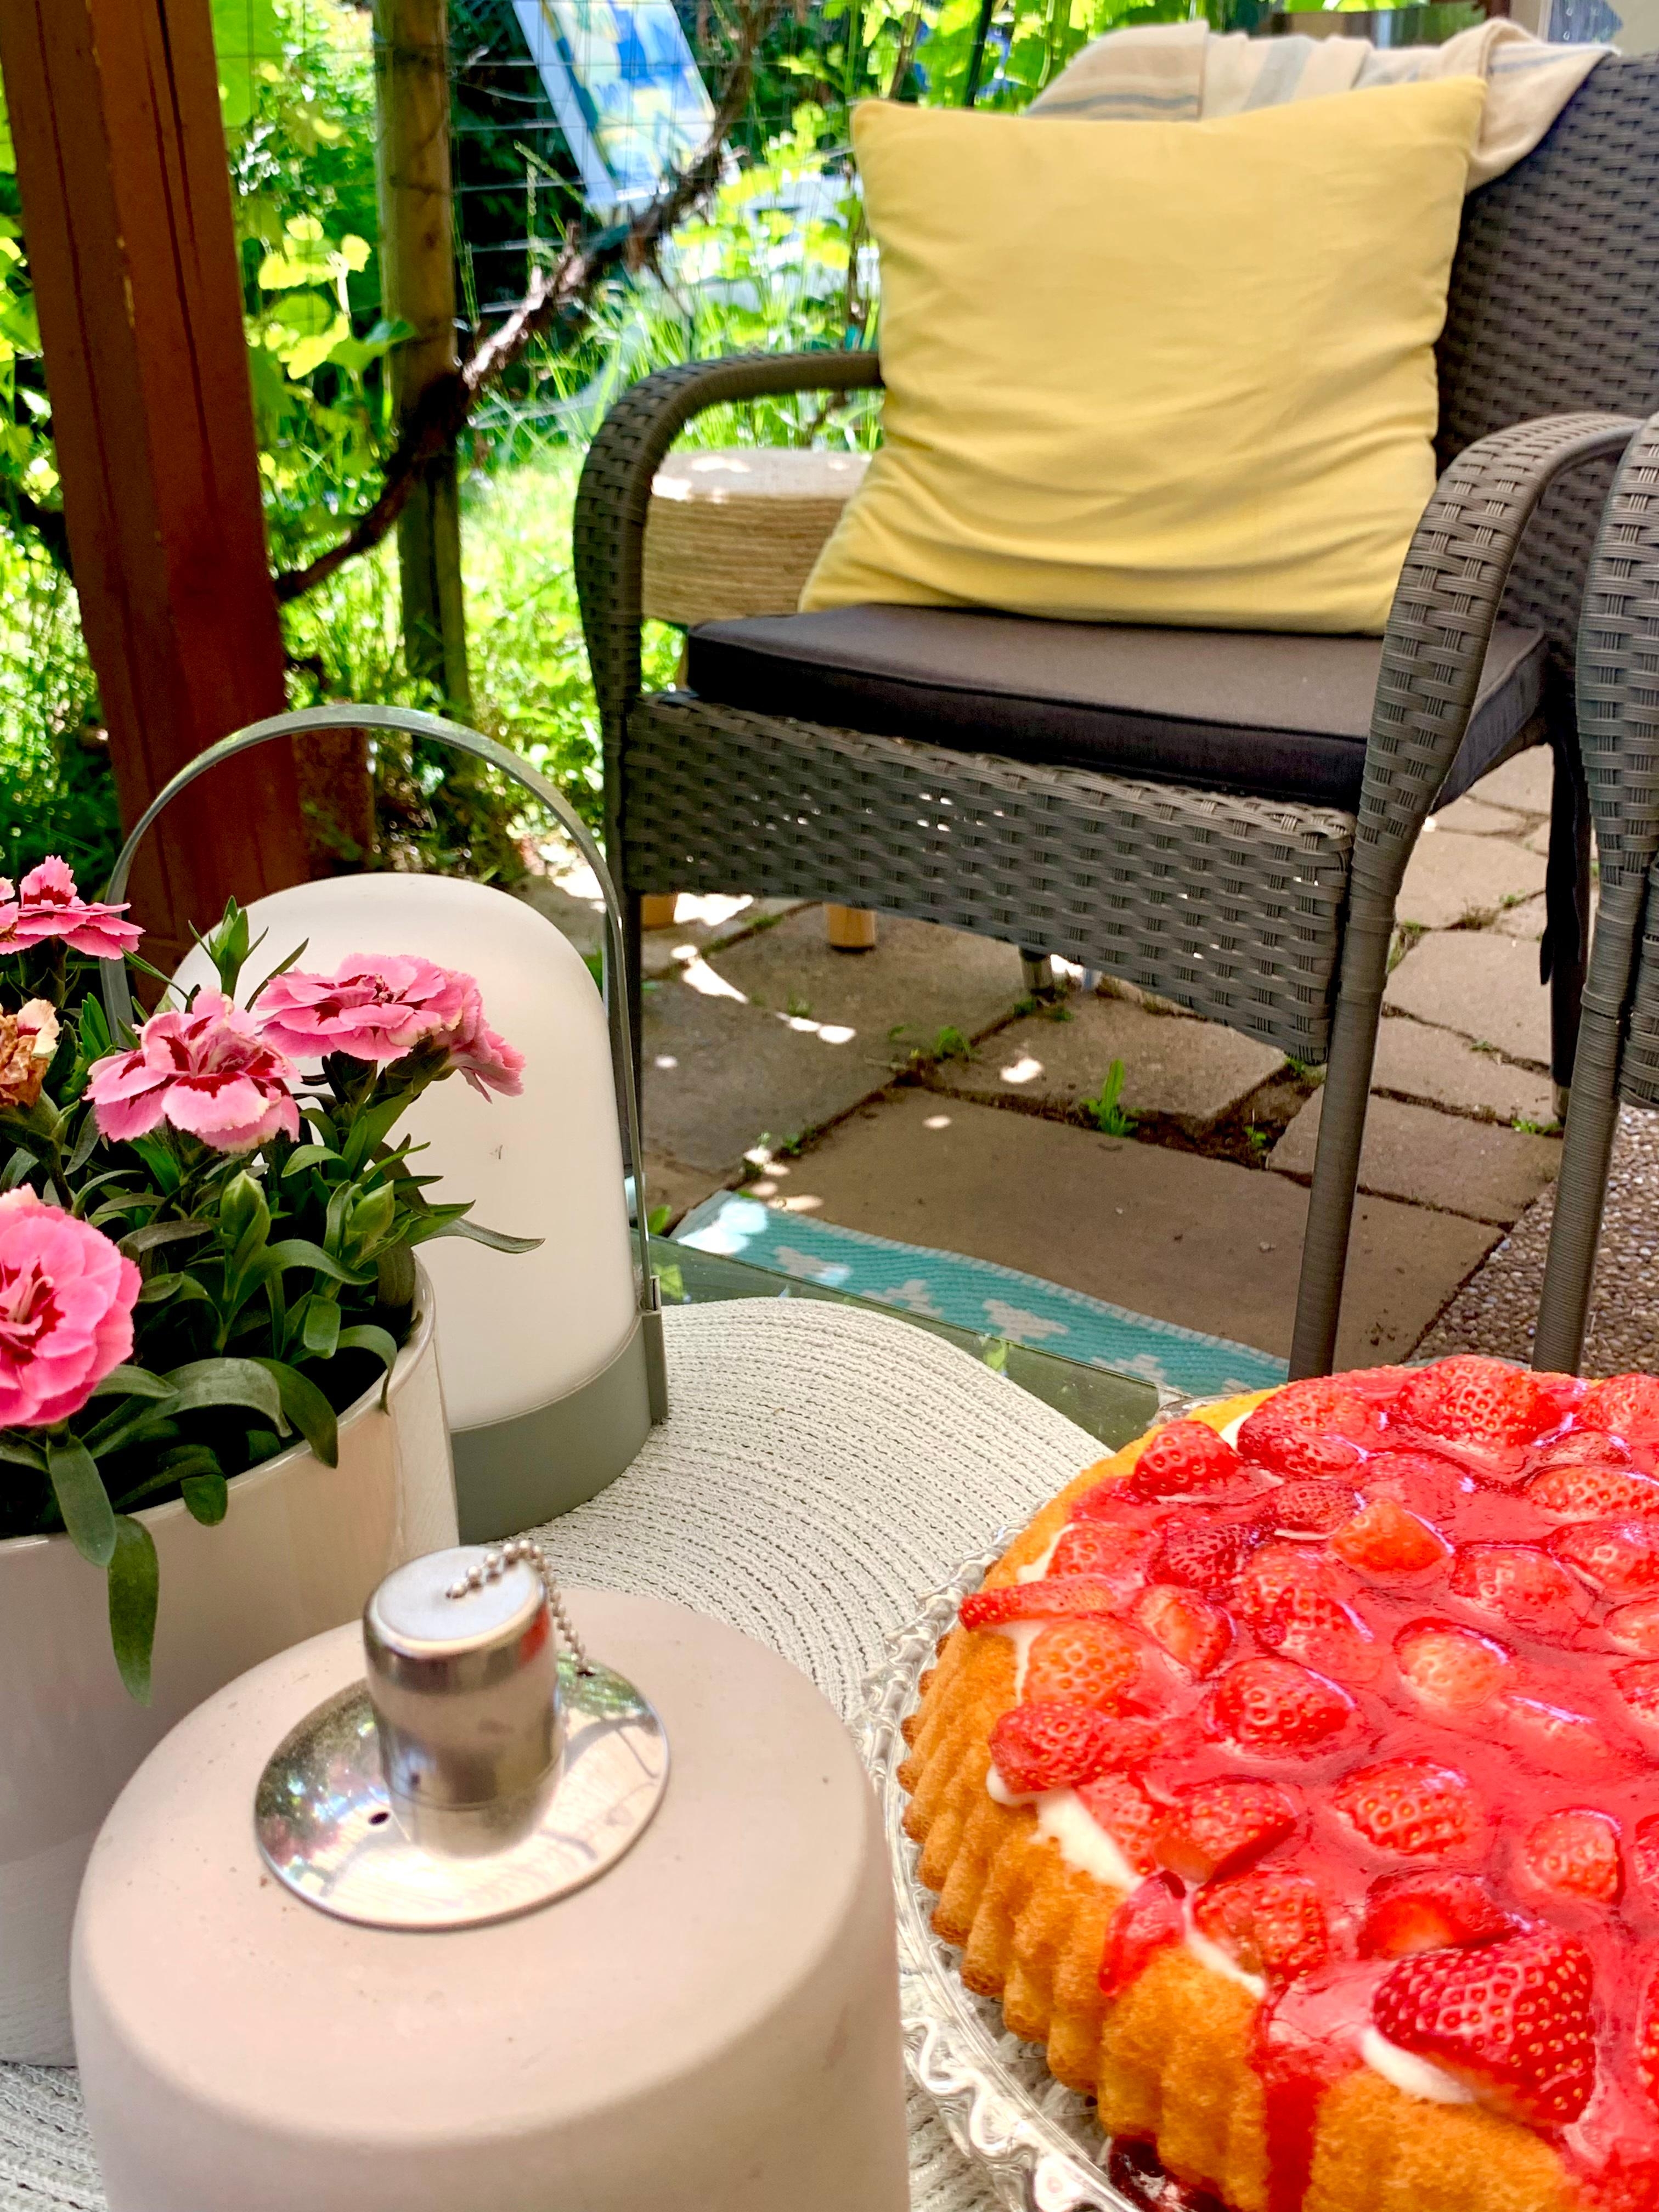 Feiertag Zeit für Kuchen 🍓🍓

#cake #backen #erdbeere #garten #outdoor #sommertag #Stuhl #tisch #flower #lampe 